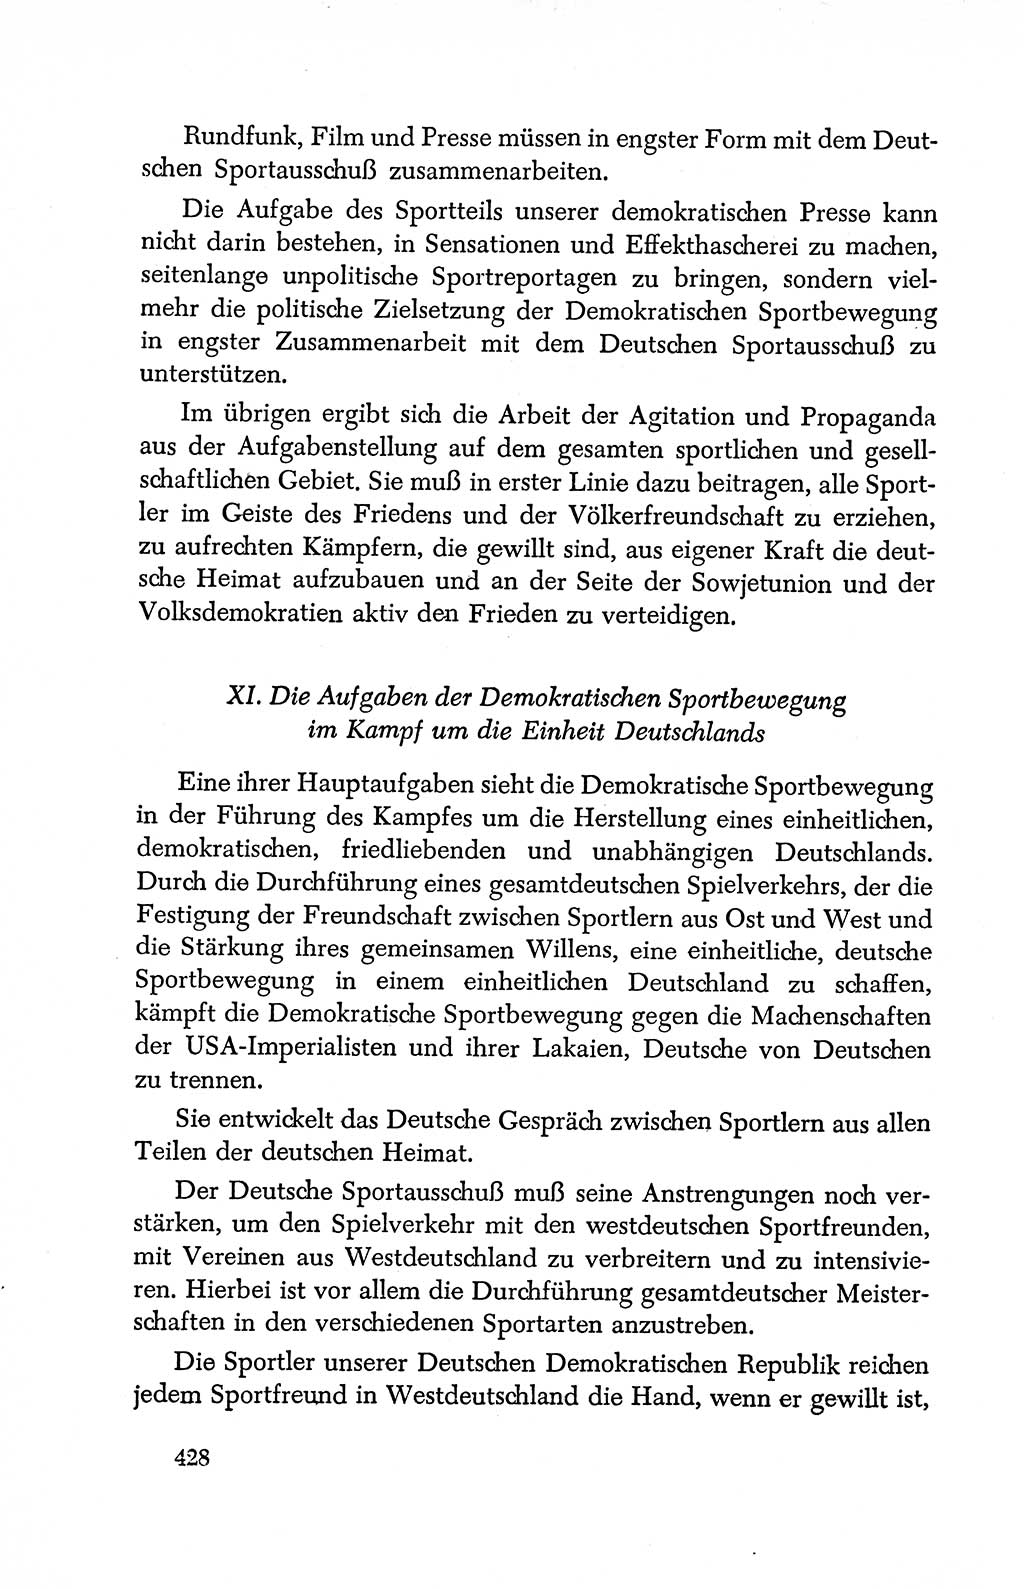 Dokumente der Sozialistischen Einheitspartei Deutschlands (SED) [Deutsche Demokratische Republik (DDR)] 1950-1952, Seite 428 (Dok. SED DDR 1950-1952, S. 428)